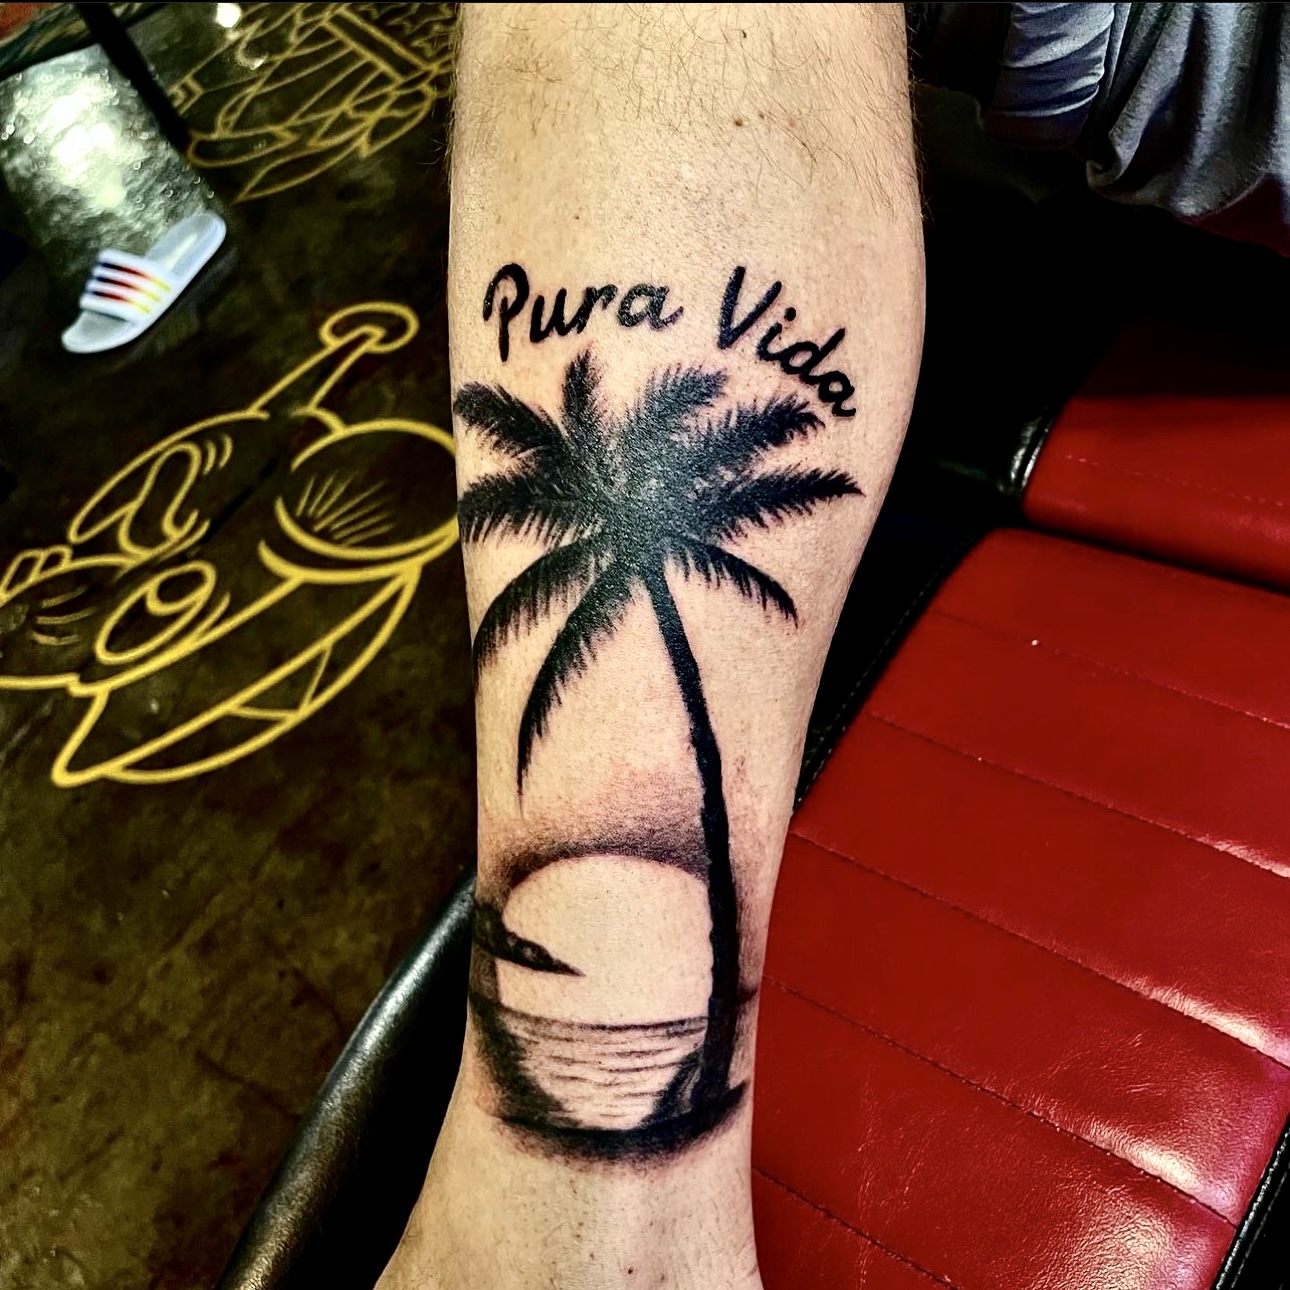 Pura Vida tattoo